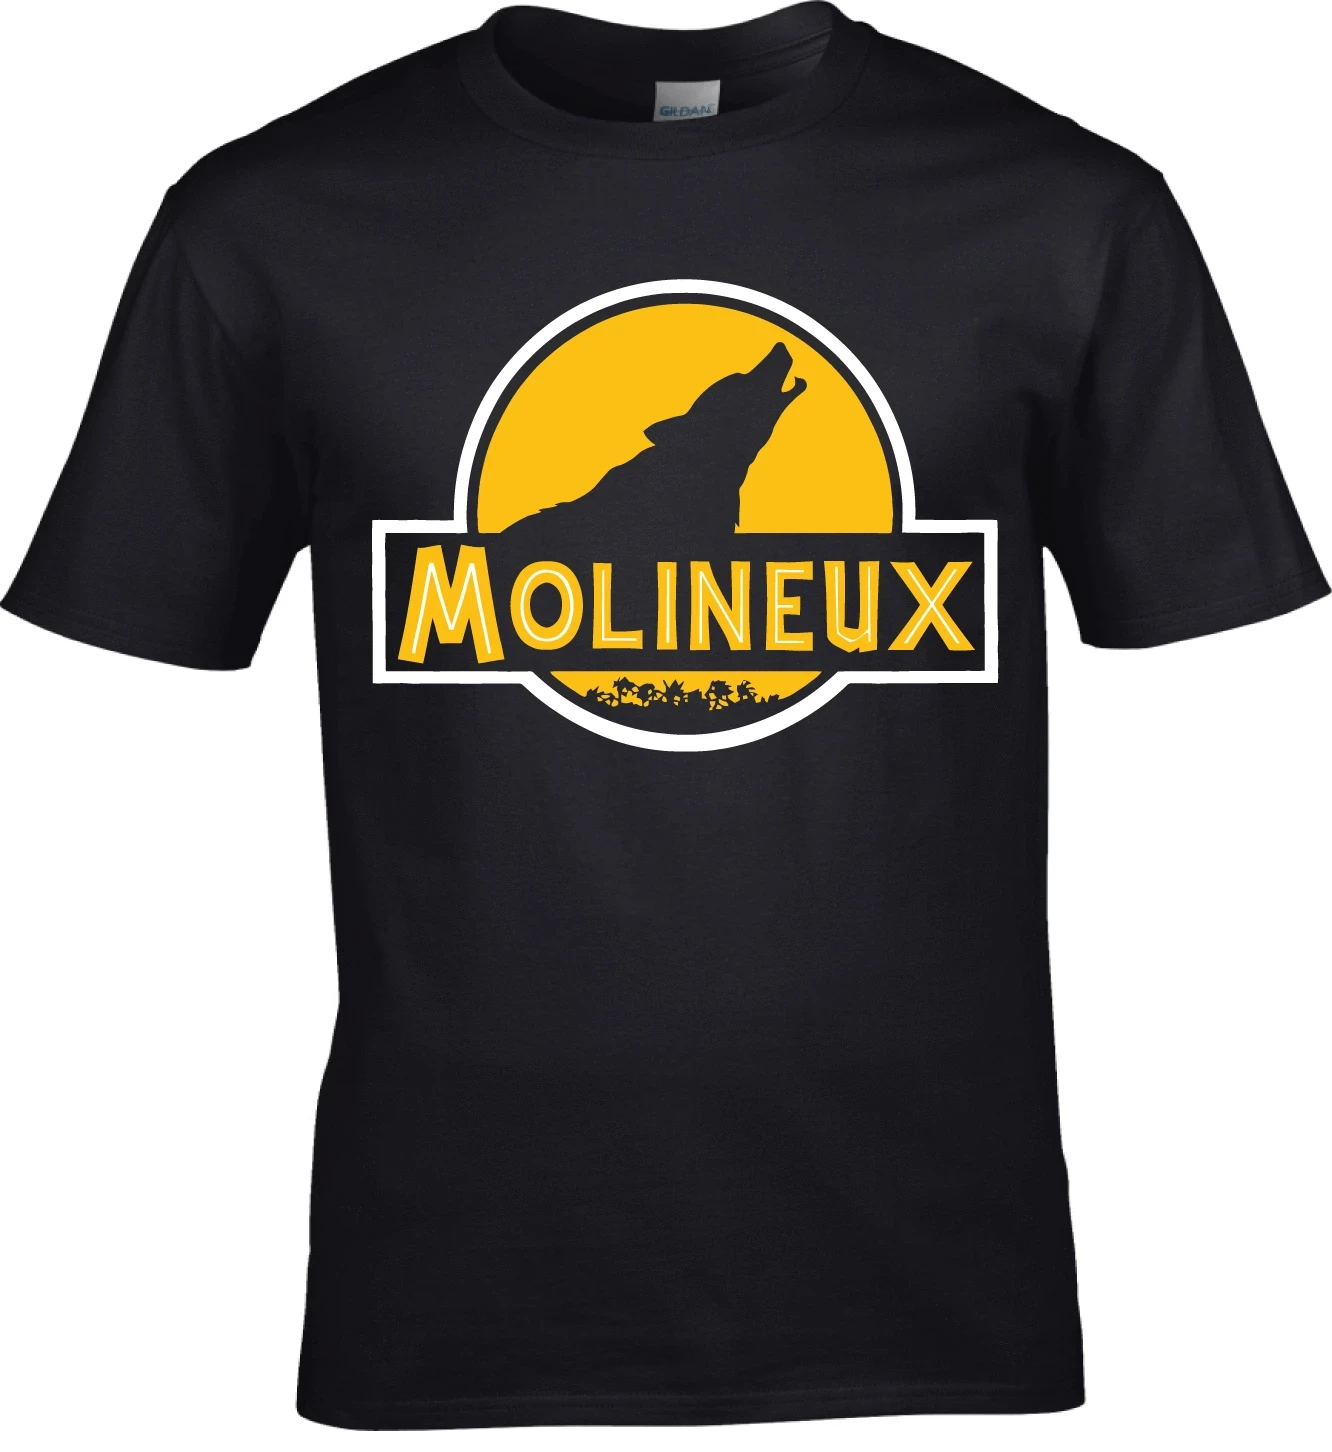 Molineux Jurassic Parodija T Shirt Wolverhampton Wanderers Nogomet Volkovi Xs 3Xl